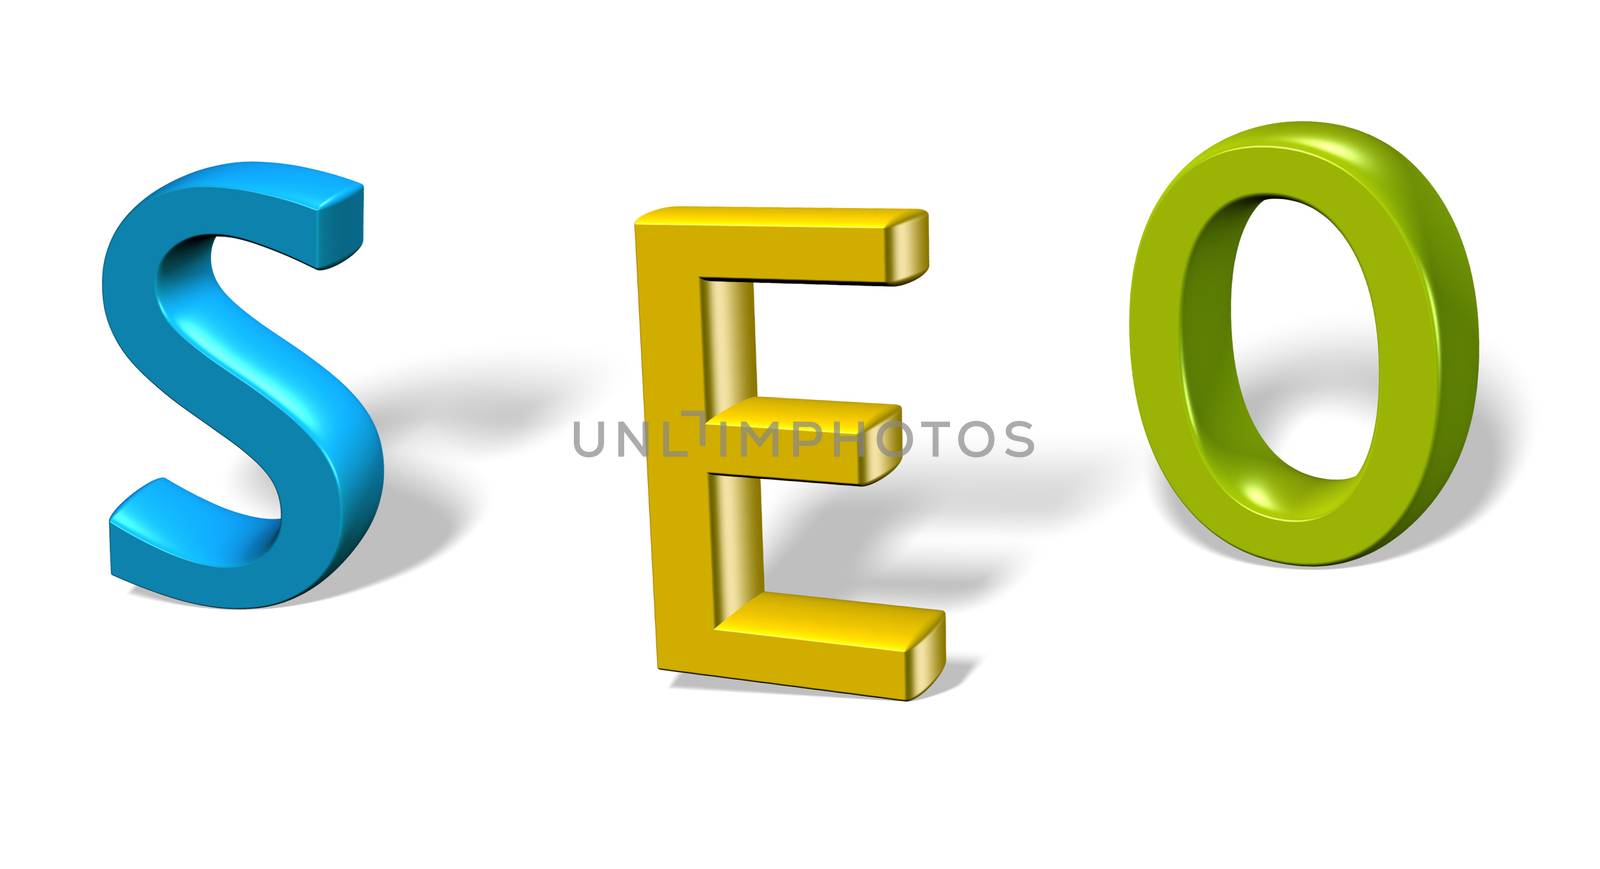 Conceptual element logo idea - company brand identity graphic